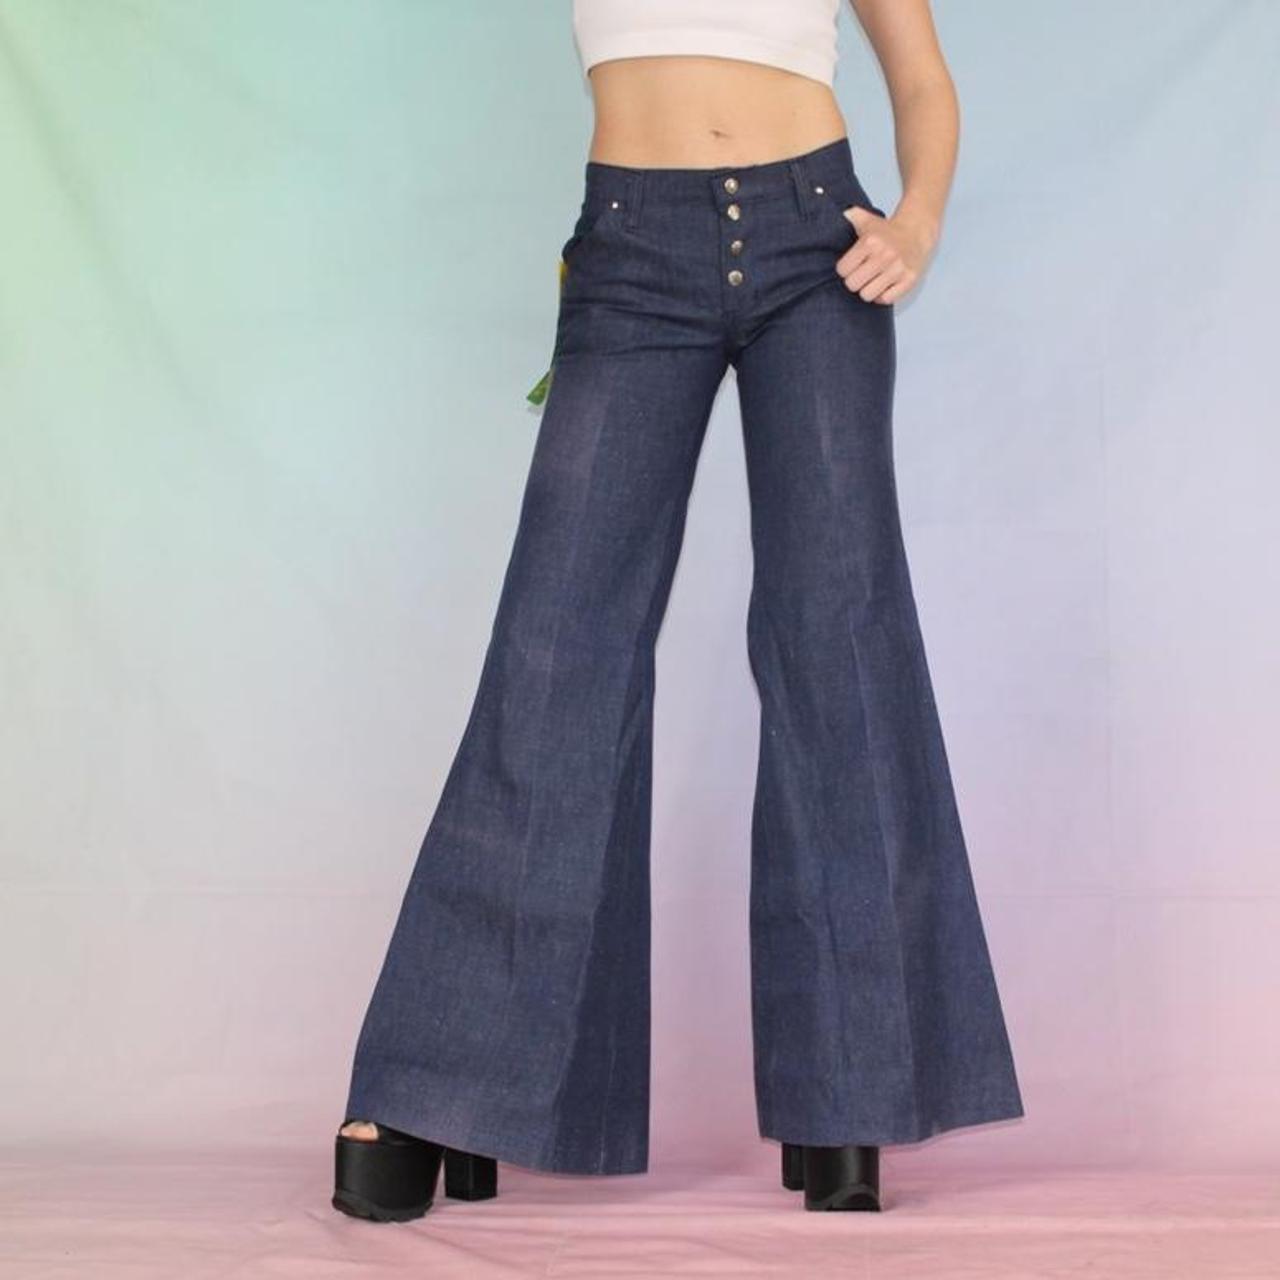 Vintage 70s jeans bell bottoms wide leg 🌈 Vintage... - Depop